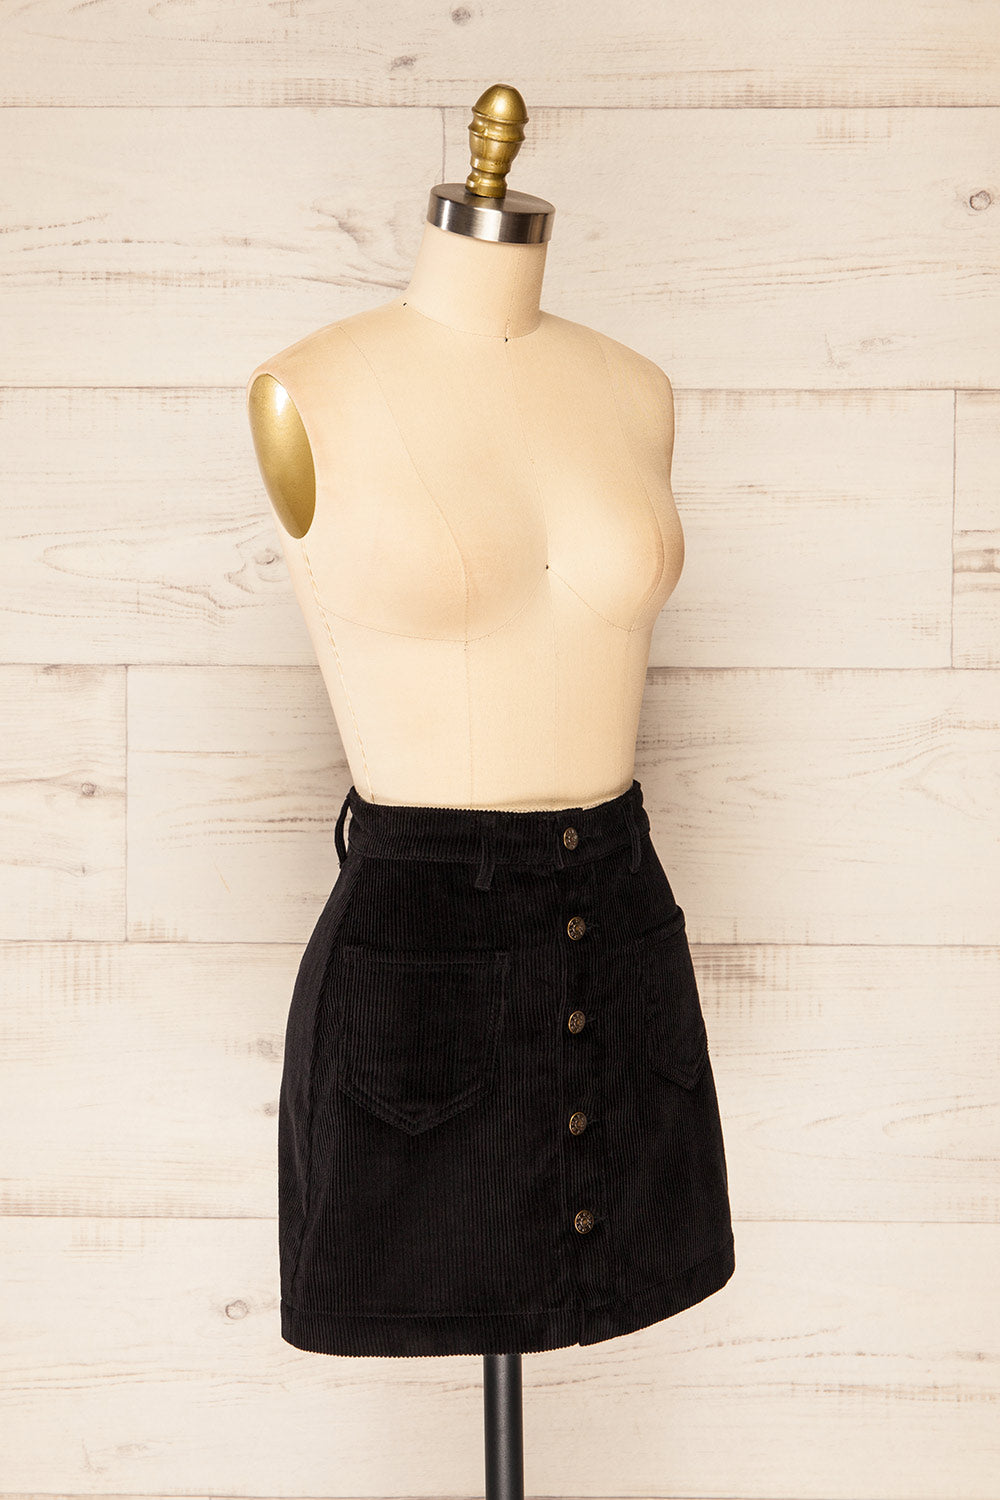 Acy Black Short Corduroy Skirt w/ Buttons | La petite garçonne side view